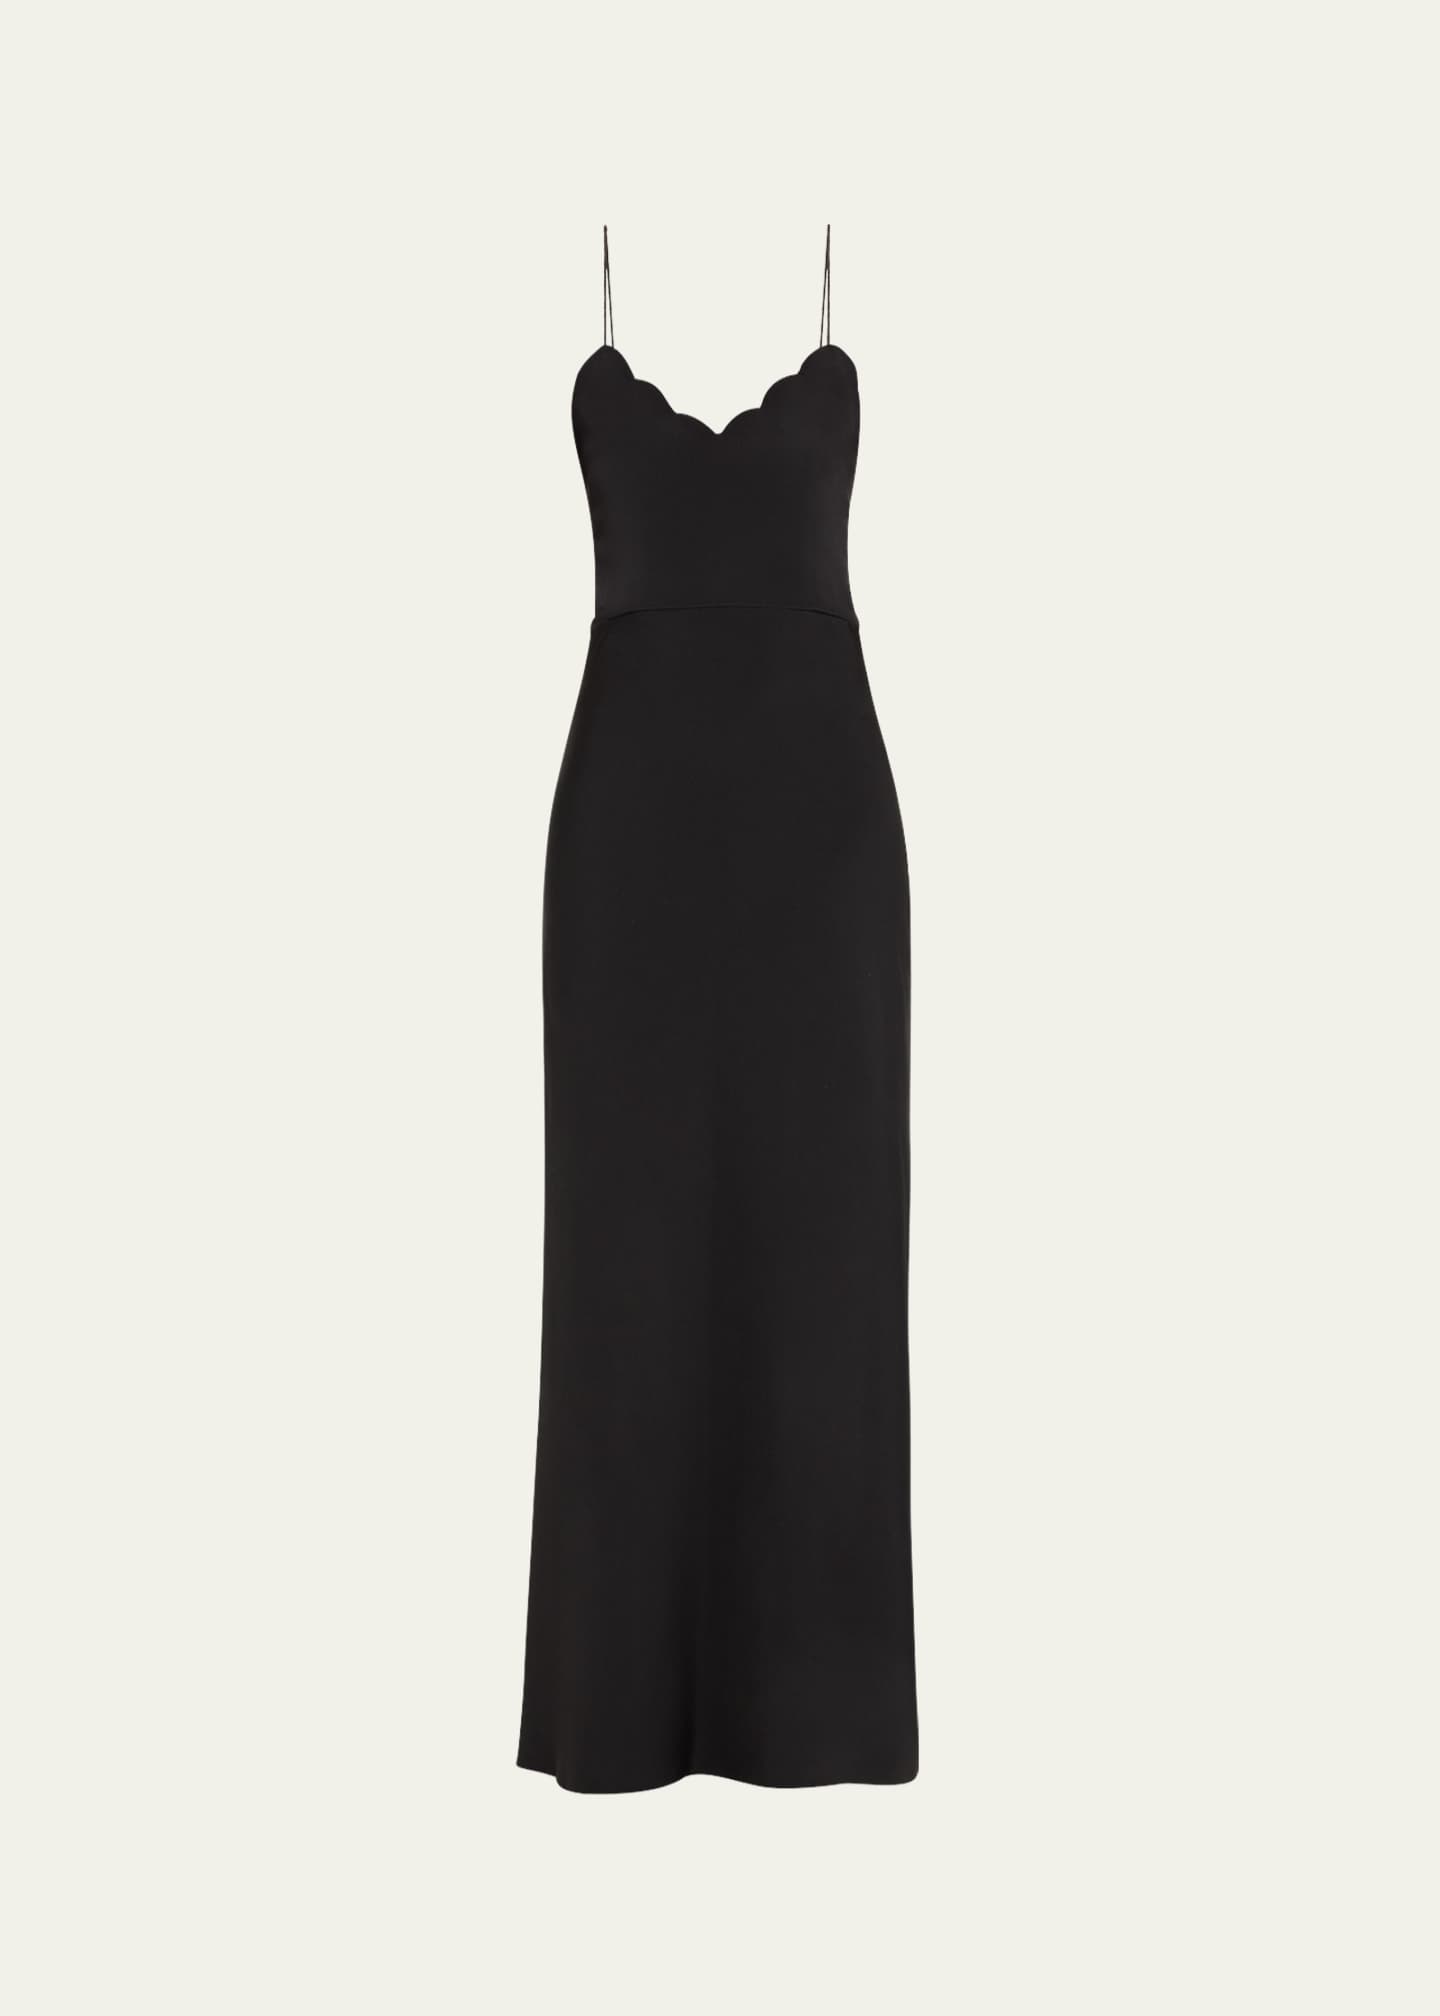 Coquette” Brand Black Overlay Lace Midi Dress (XS-S) – Chloé